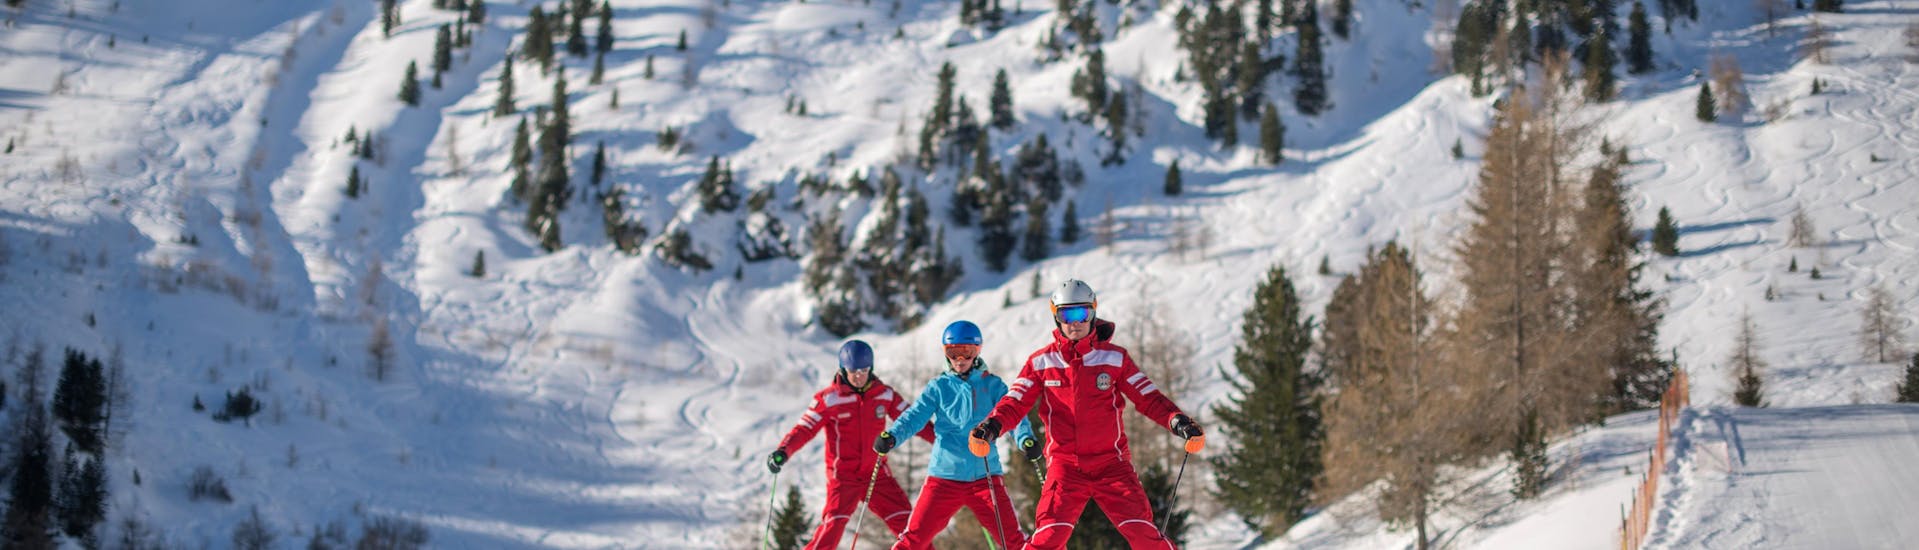 Skileraar met kinderen bij Speikboden - Campo Tures (Sand in Taufers) tijdens een van de privé skilessen voor kinderen van alle niveaus.